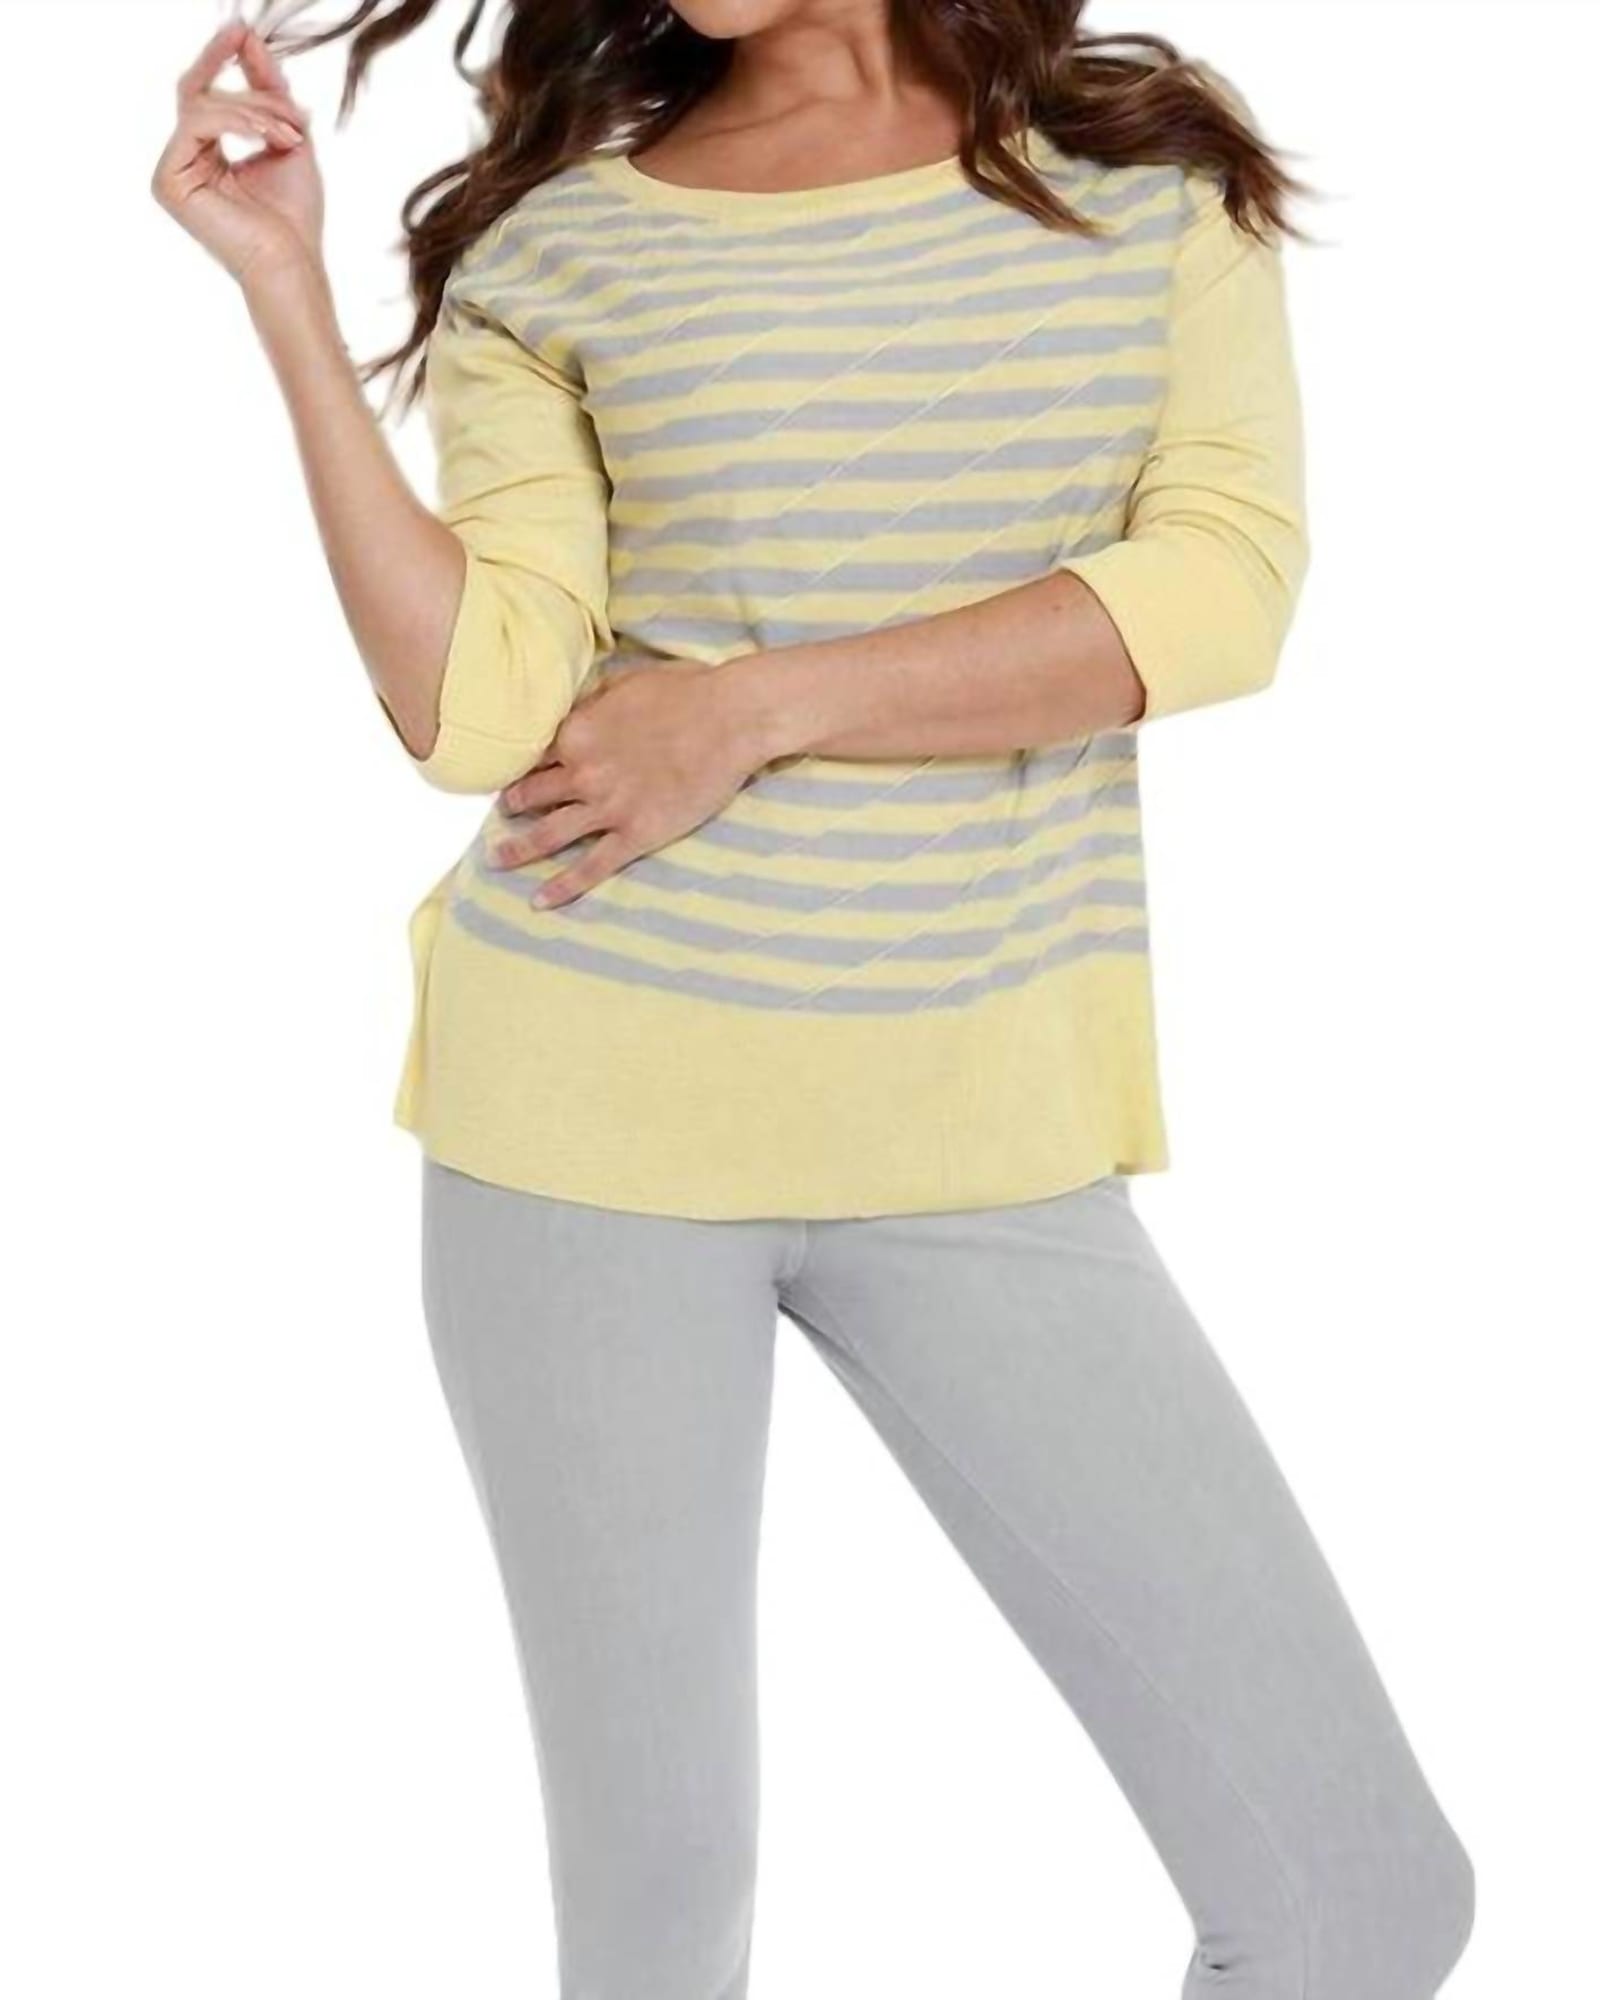 Double Striped Sweater in Yello/Gray | Yello/Gray